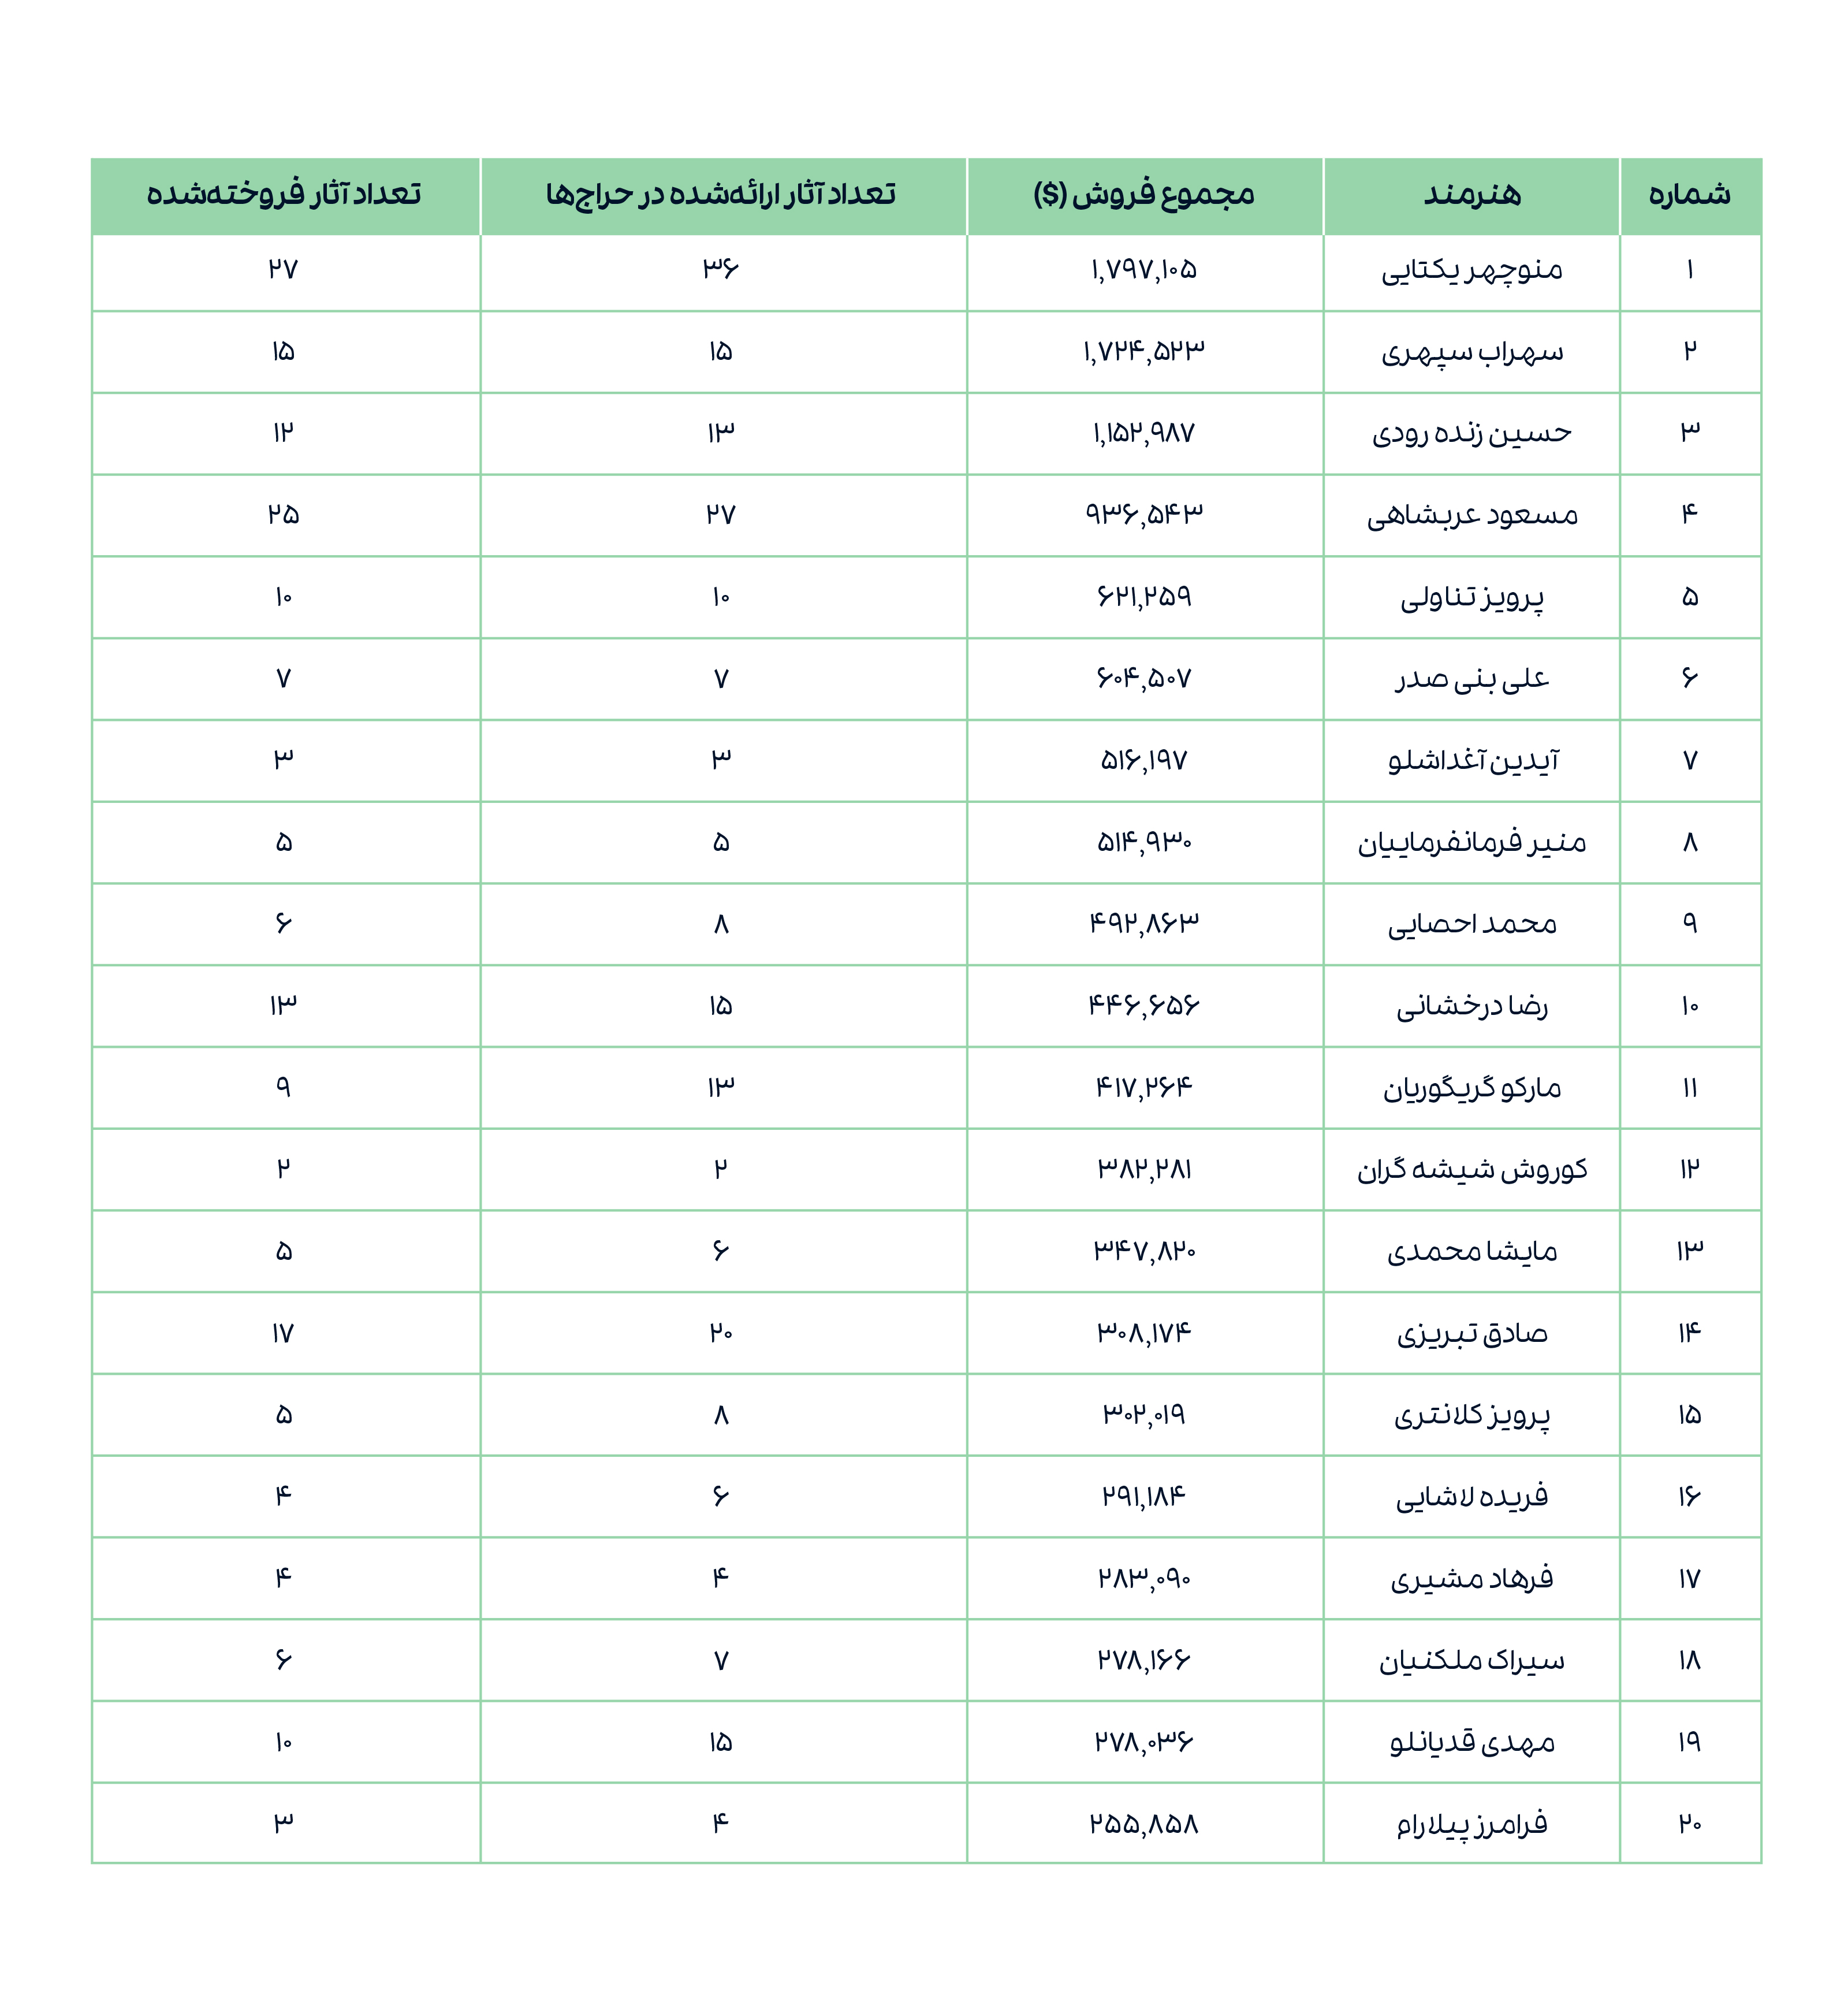 جدول 5. بیست هنرمند پرفروش ایرانی در بازار (1402).